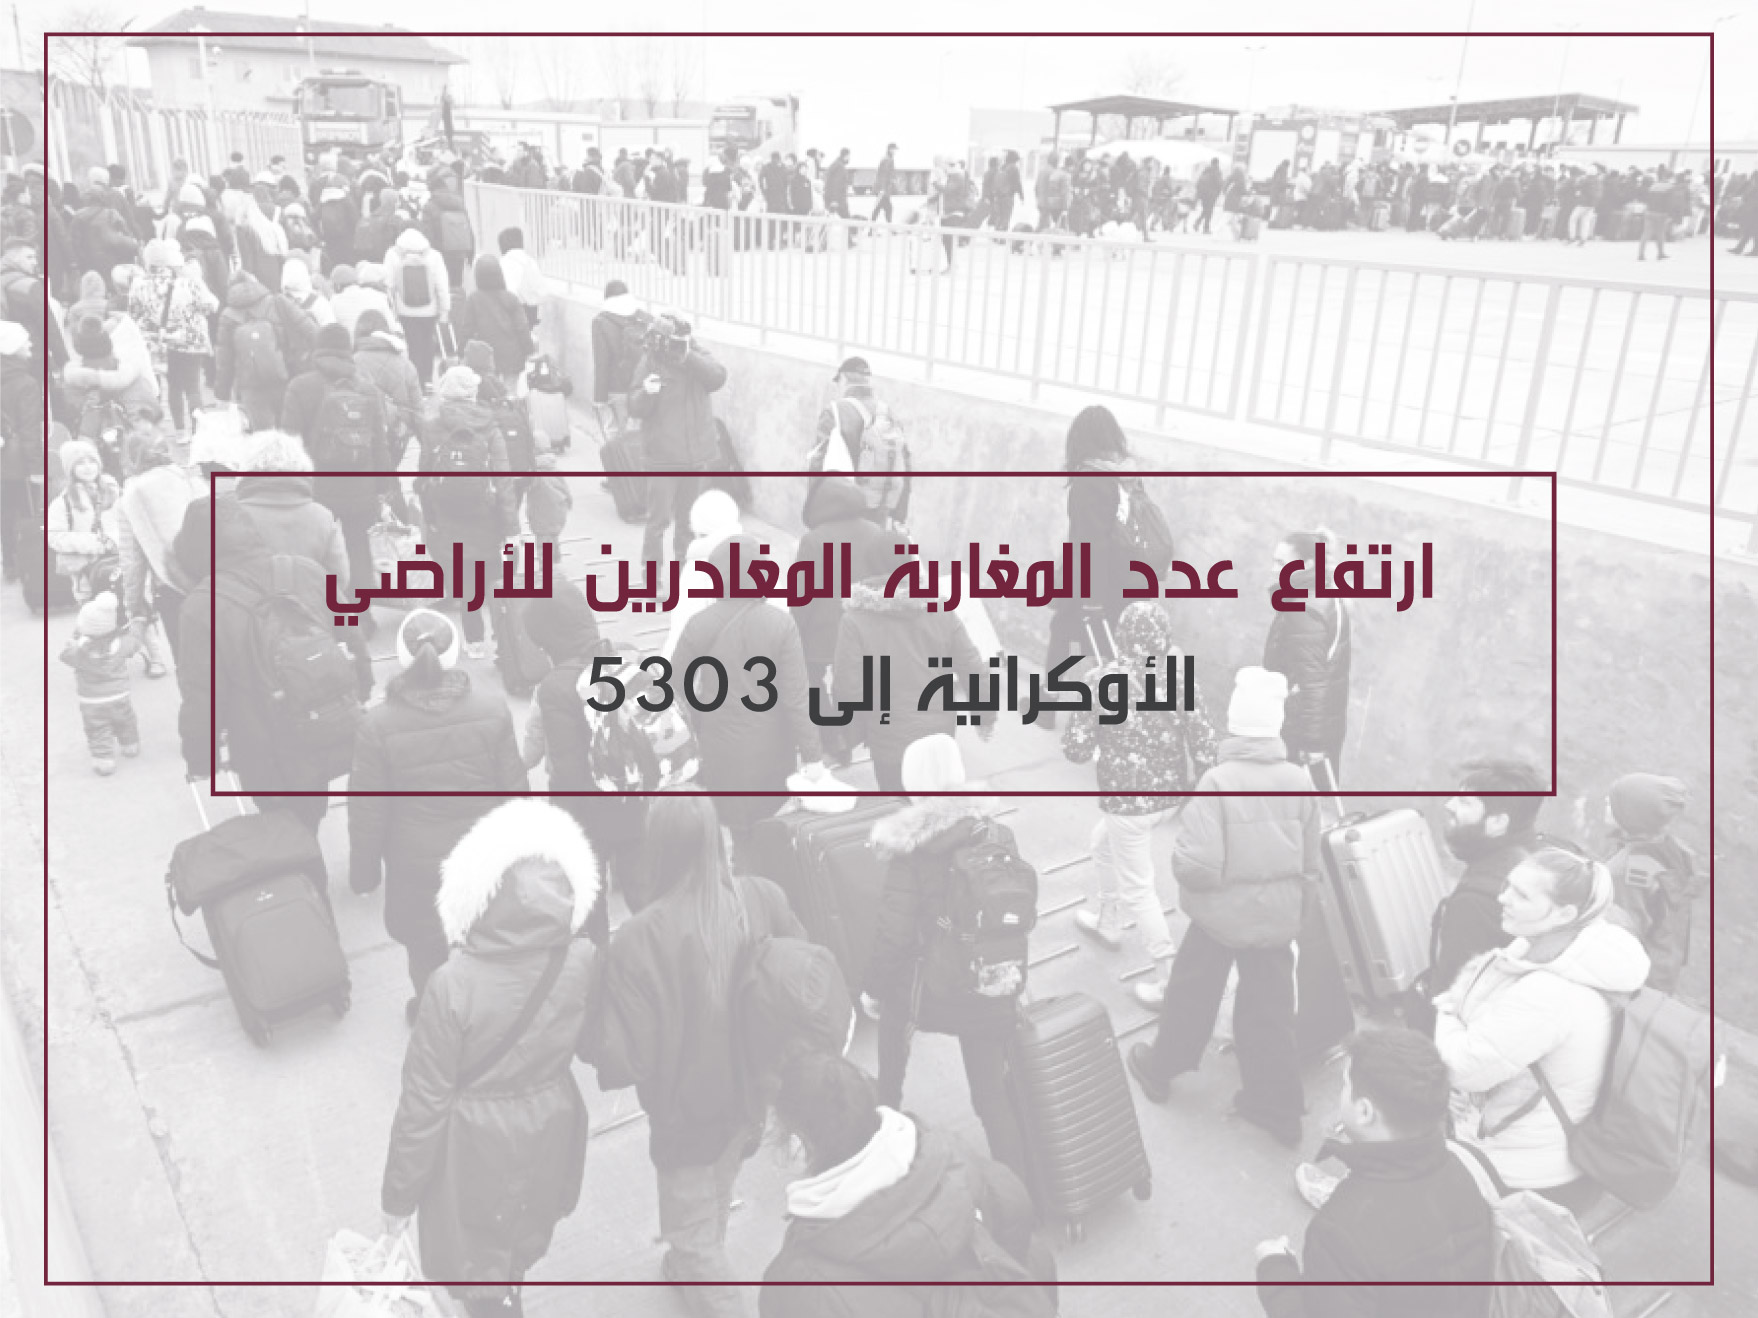 ارتفاع عدد المغاربة المغادرين للأراضي الأكرانية إلى 5303